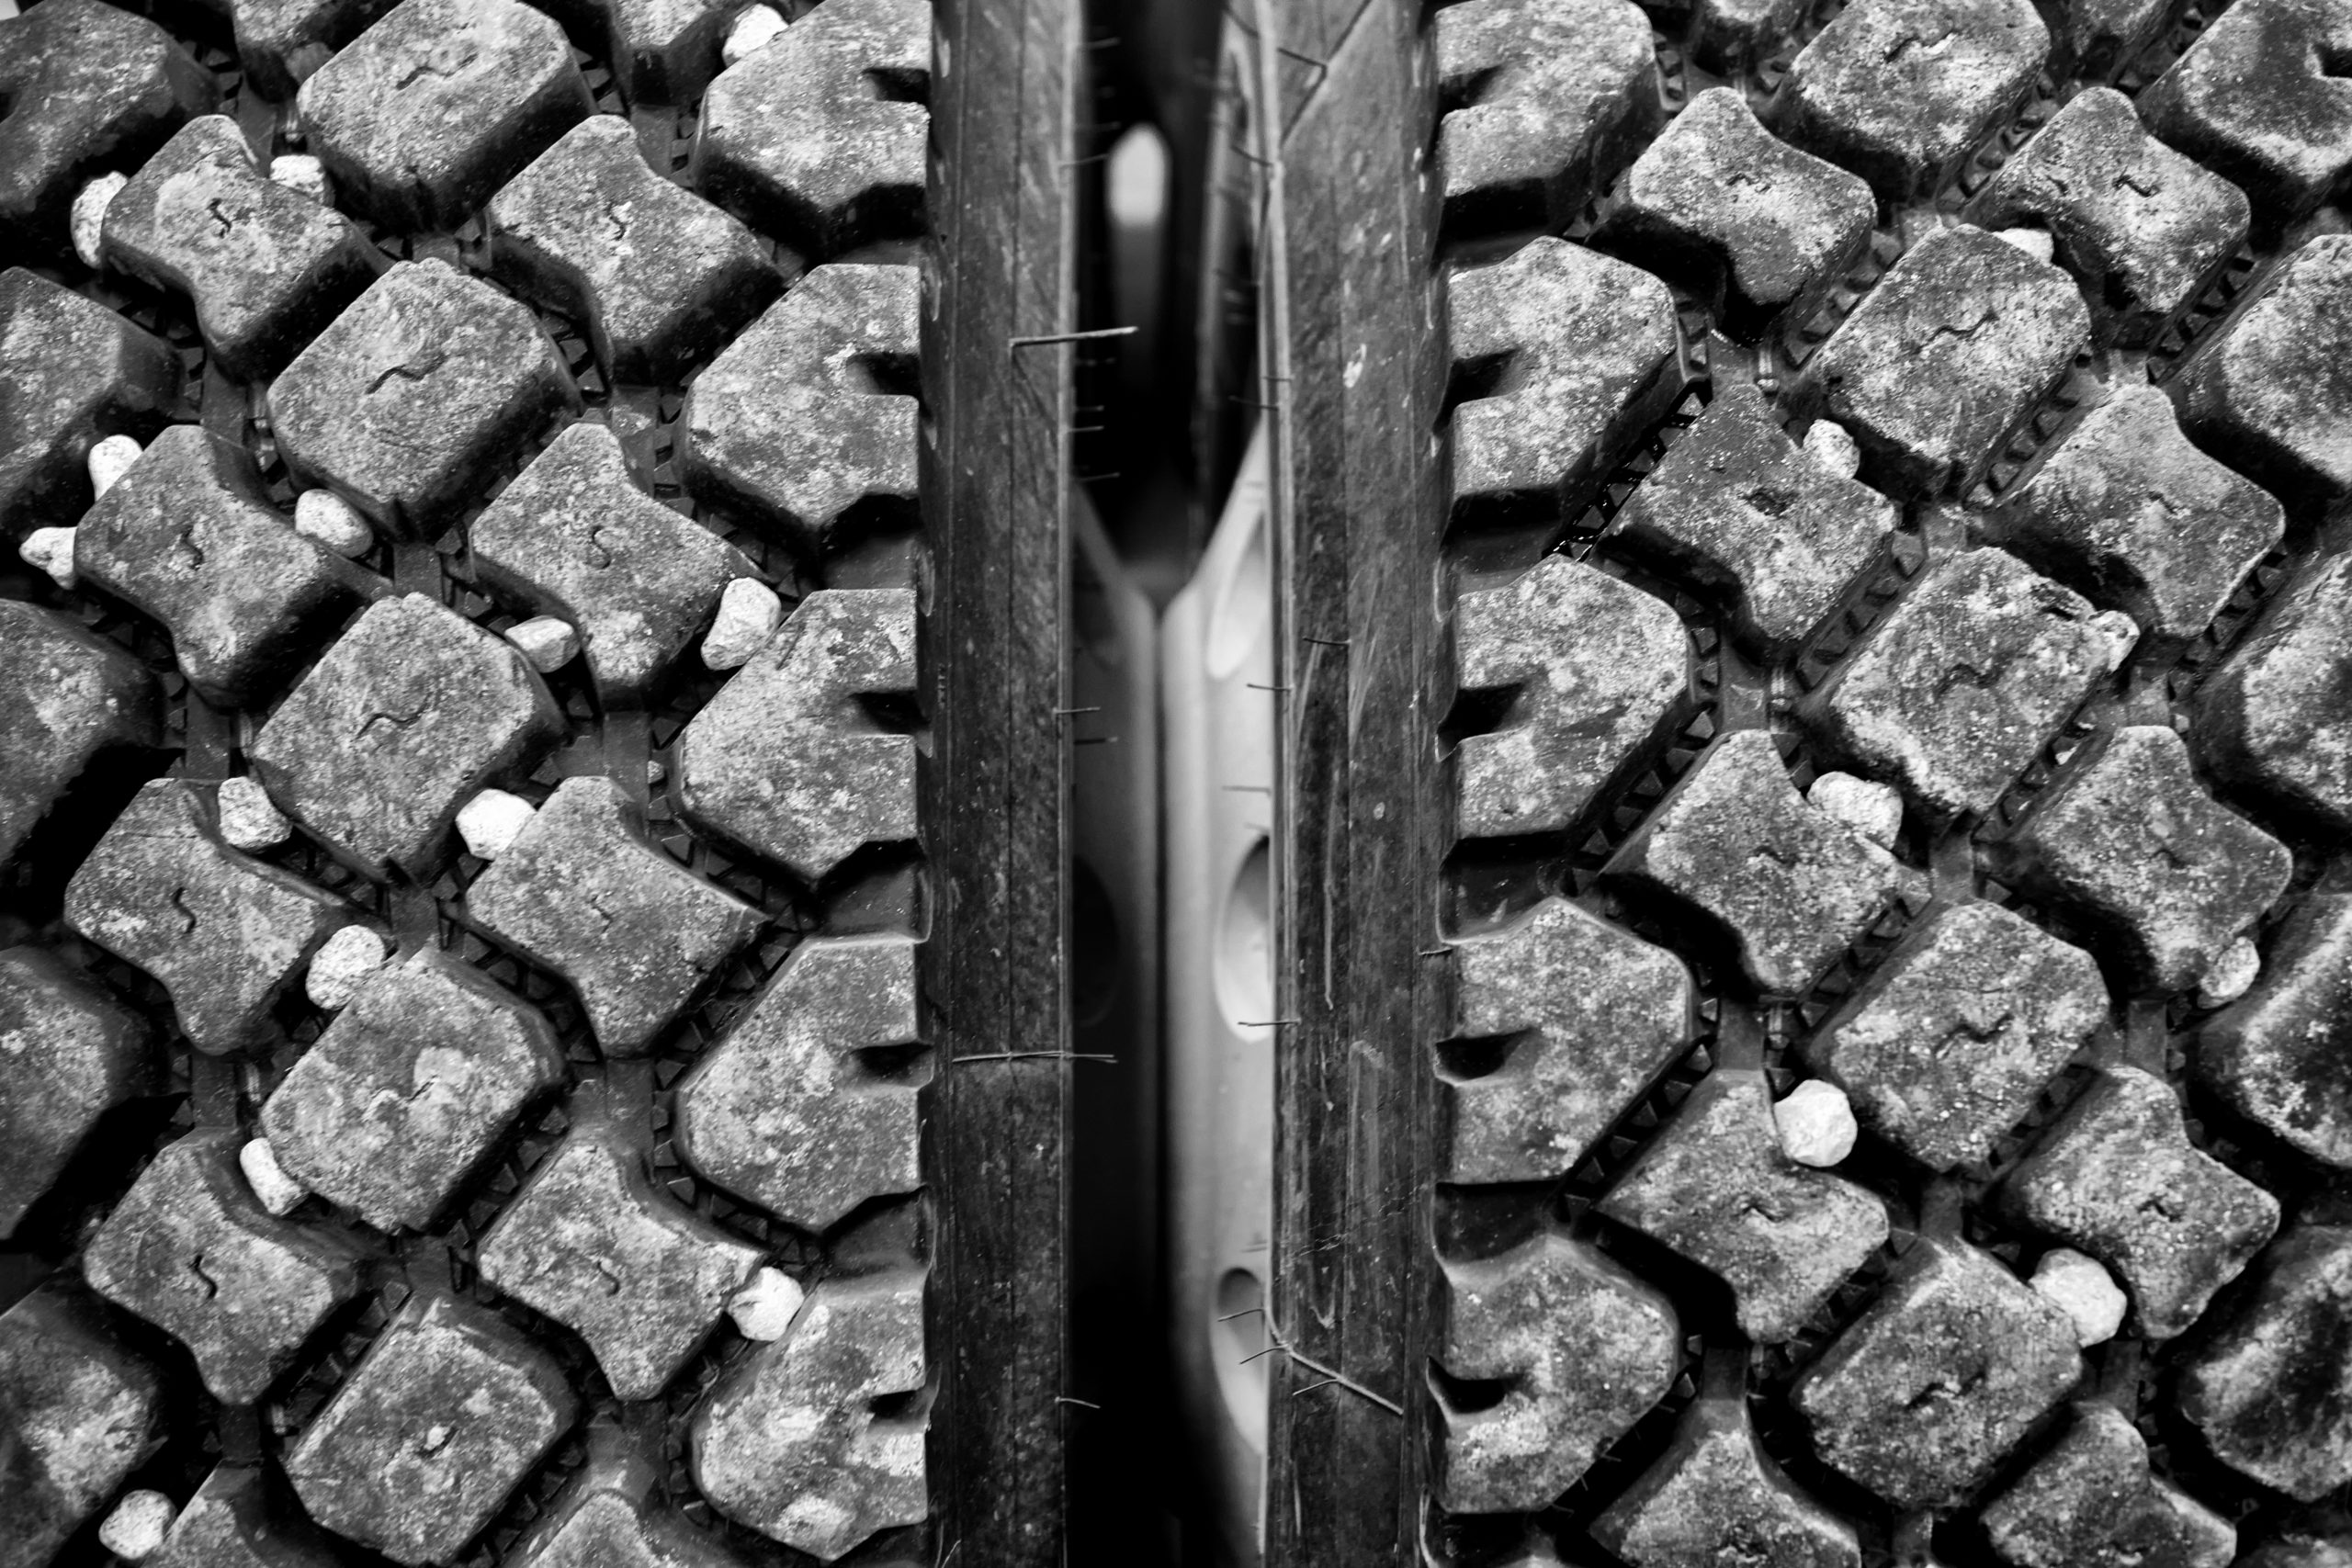 Rocks stuck in tire treads